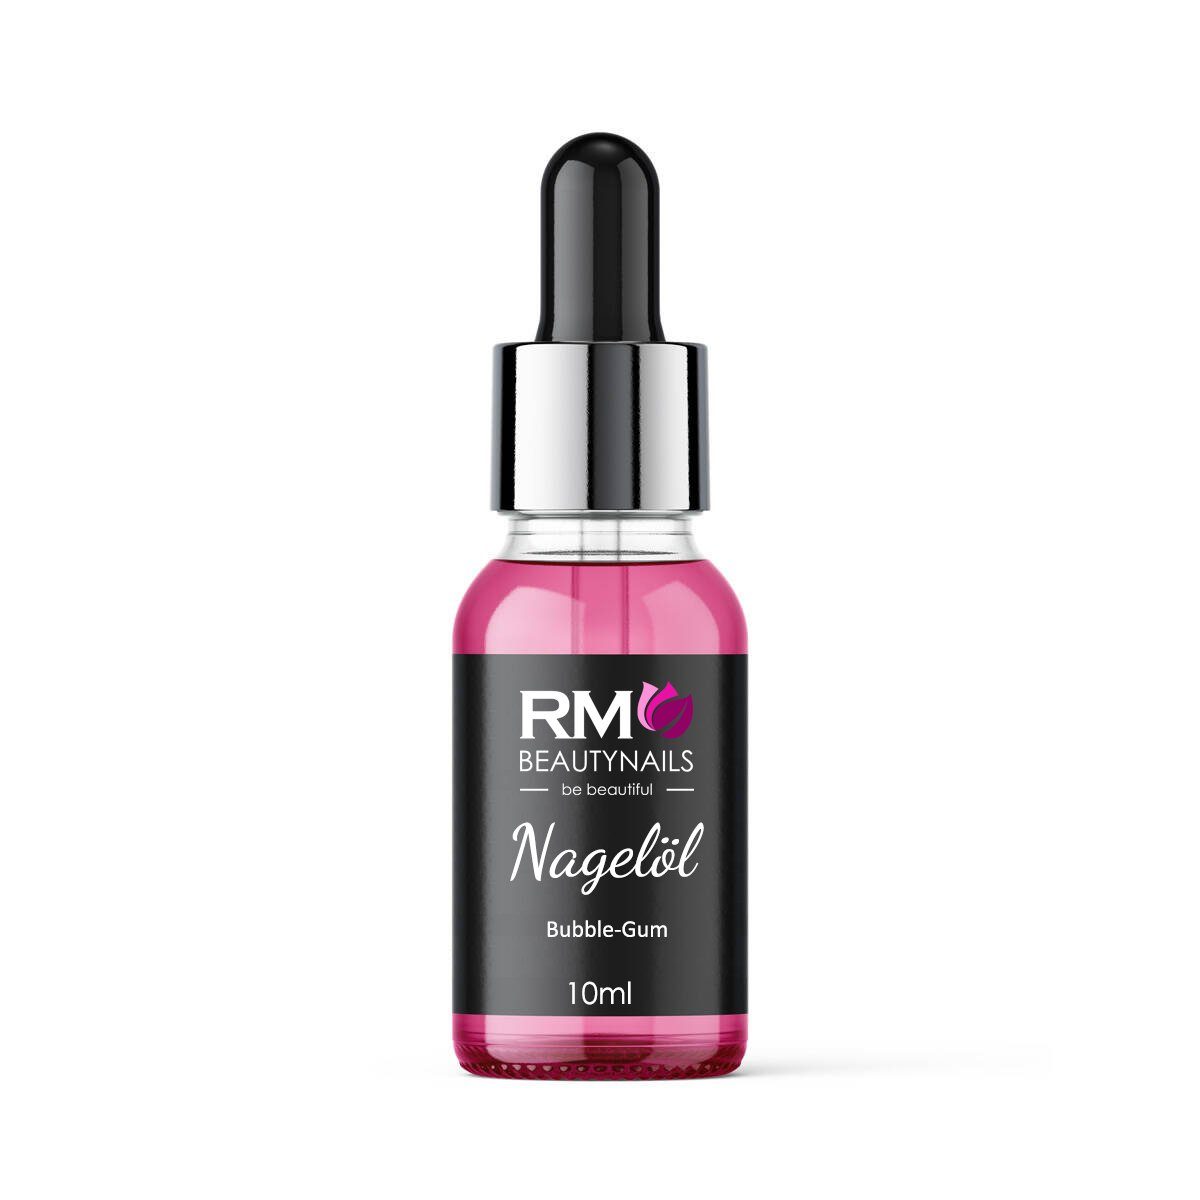 RM Beautynails Nagelpflegeöl Nagelöl Nail Cuticle Oil mit Pipette 10ml Pflege für die Nagelhaut, 10ml Nagelöl, Mandelöl und Pfirsich Kernöl